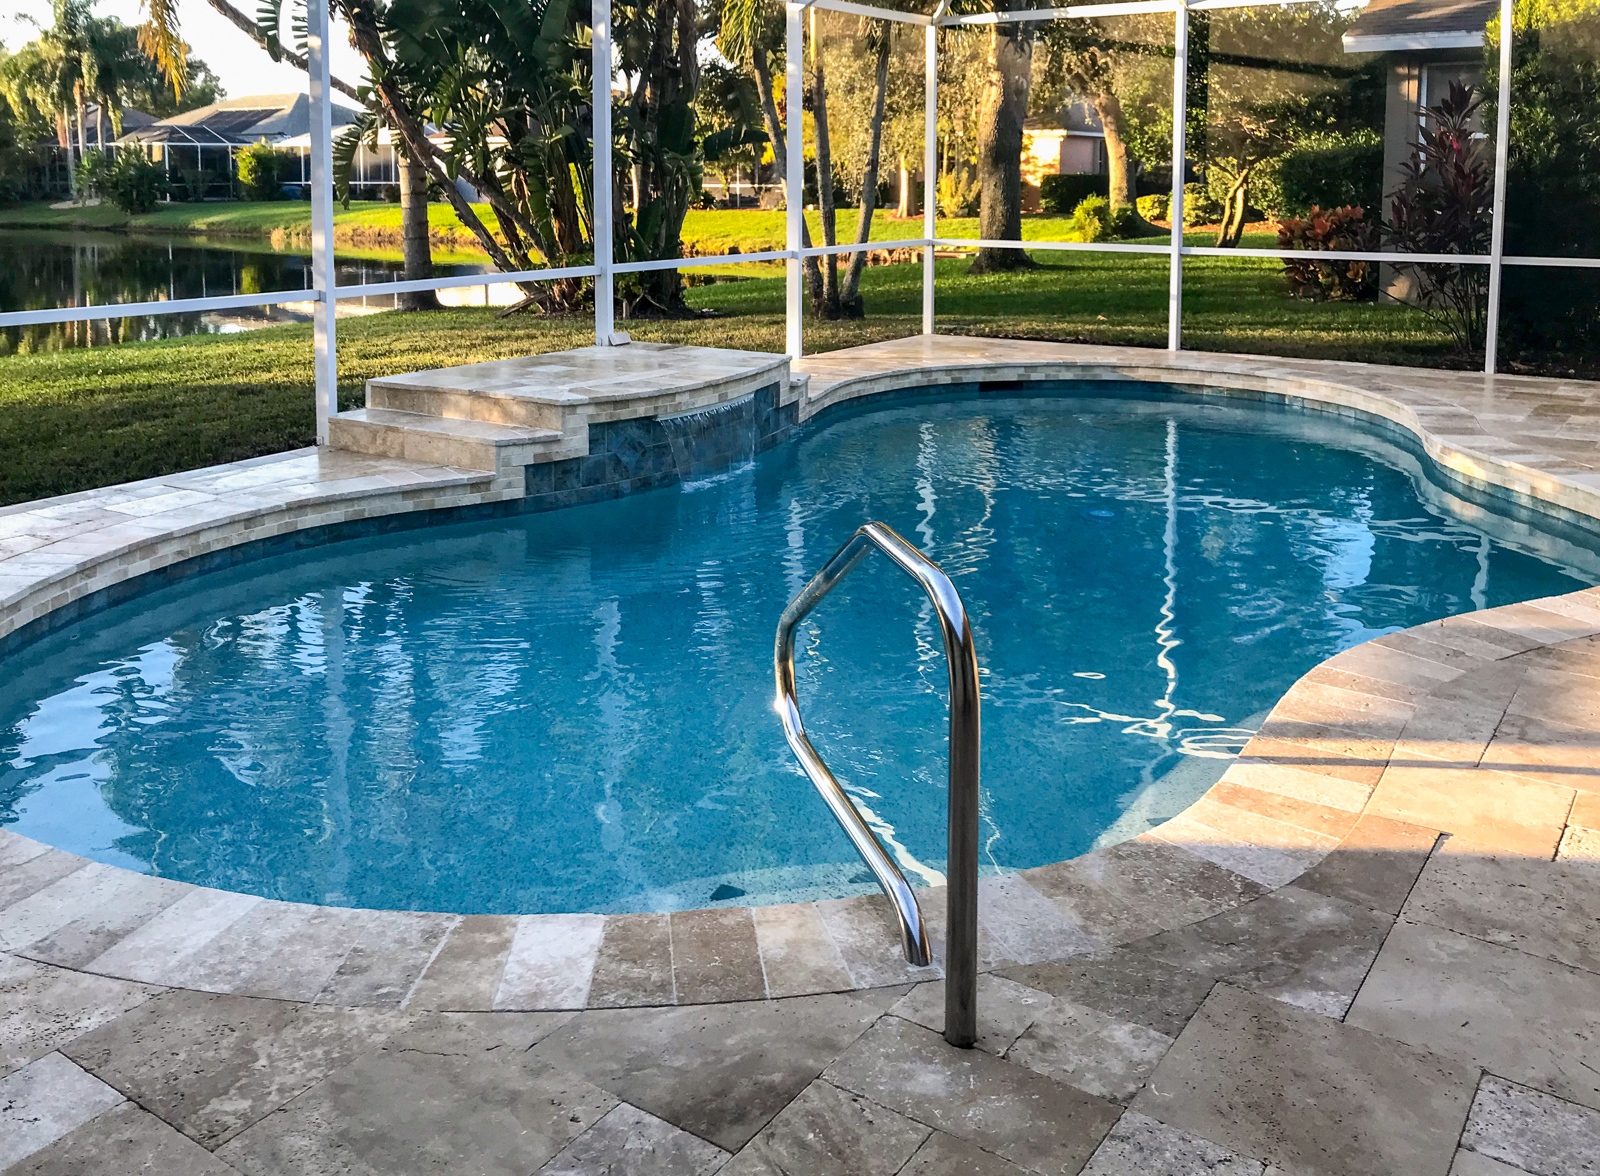 Sarasota freeform pool remodel lagoon style pools